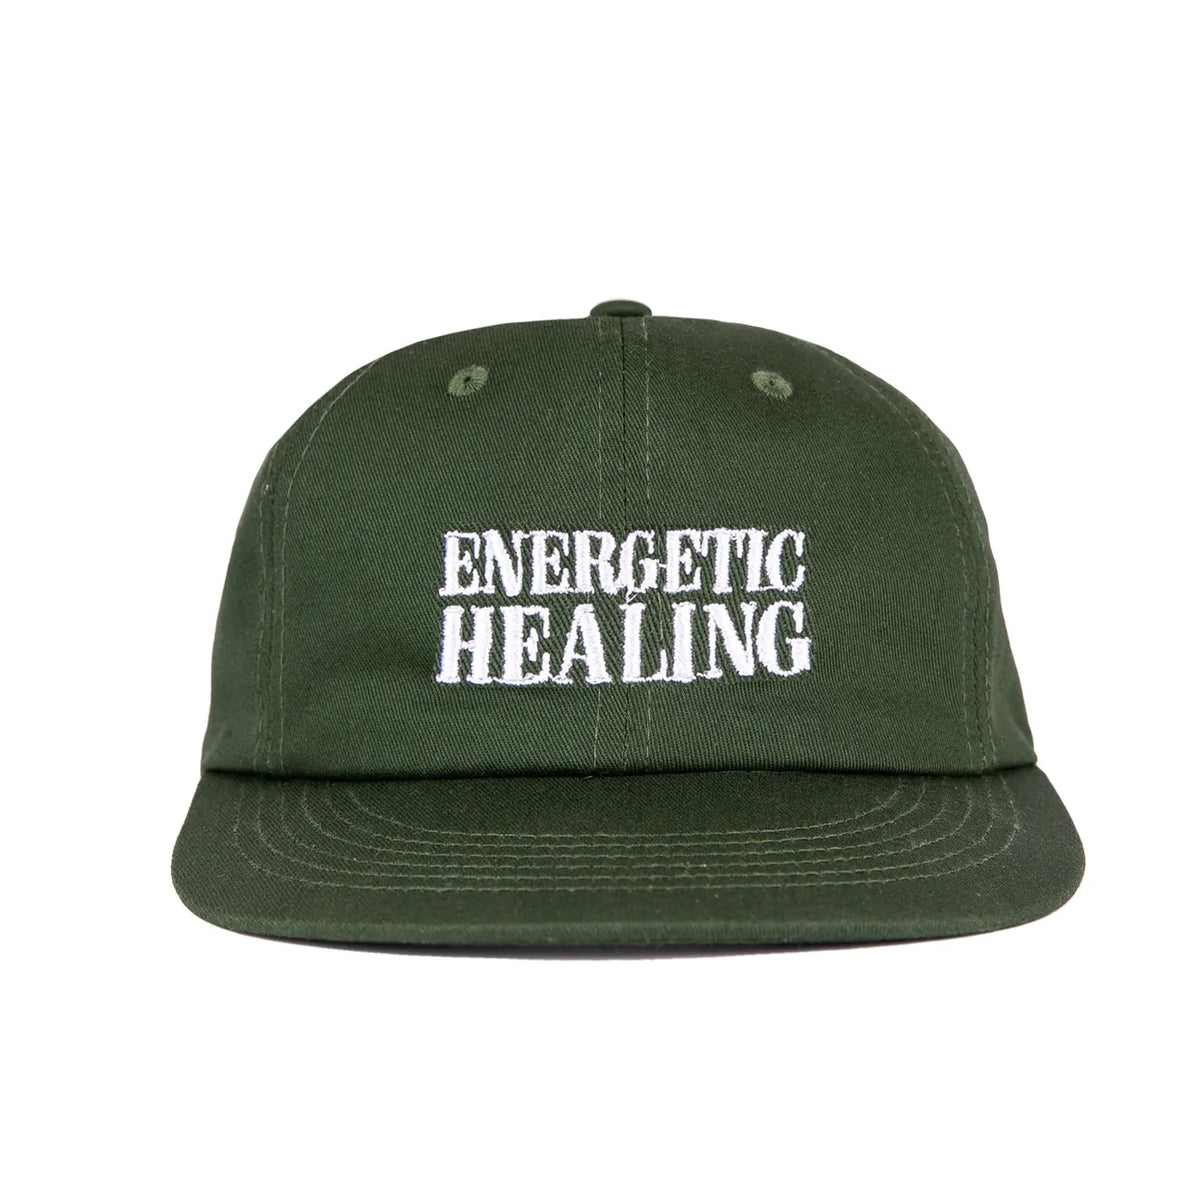 CERTIFIED ENERGETIC HEALING HAT